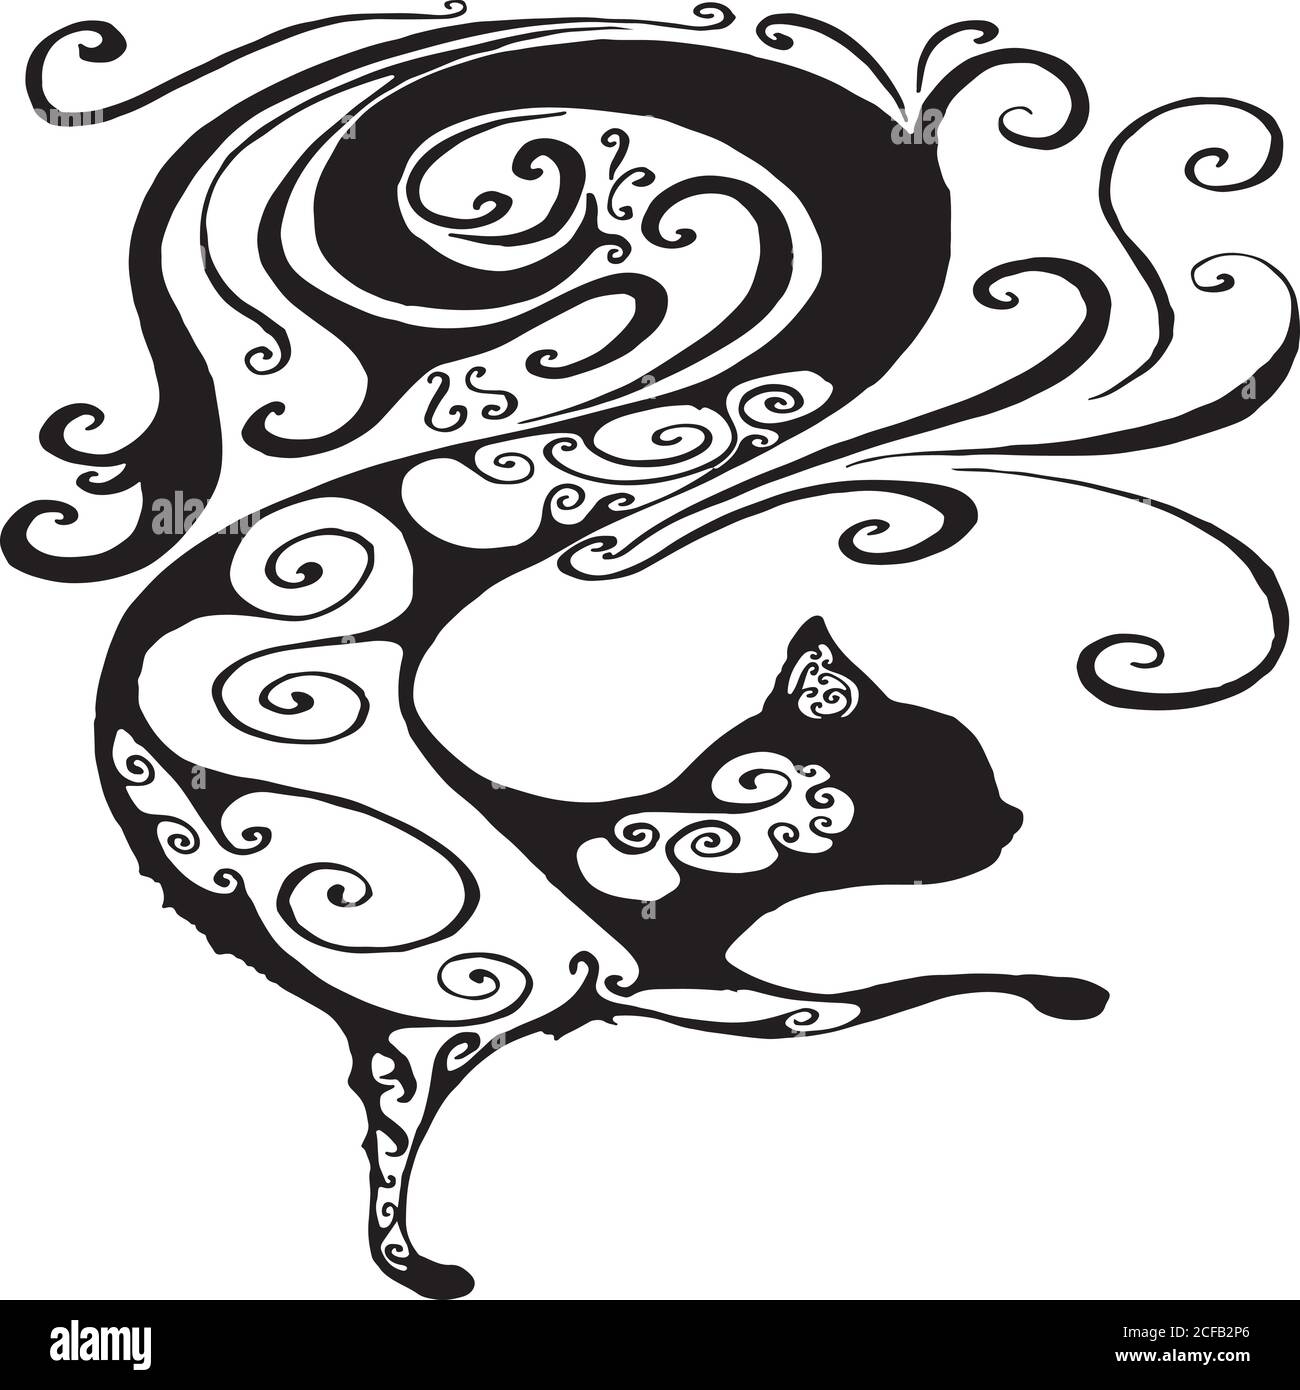 Noir et blanc, surréaliste, fantastique silhouette chat décoratif, moi Illustration de Vecteur